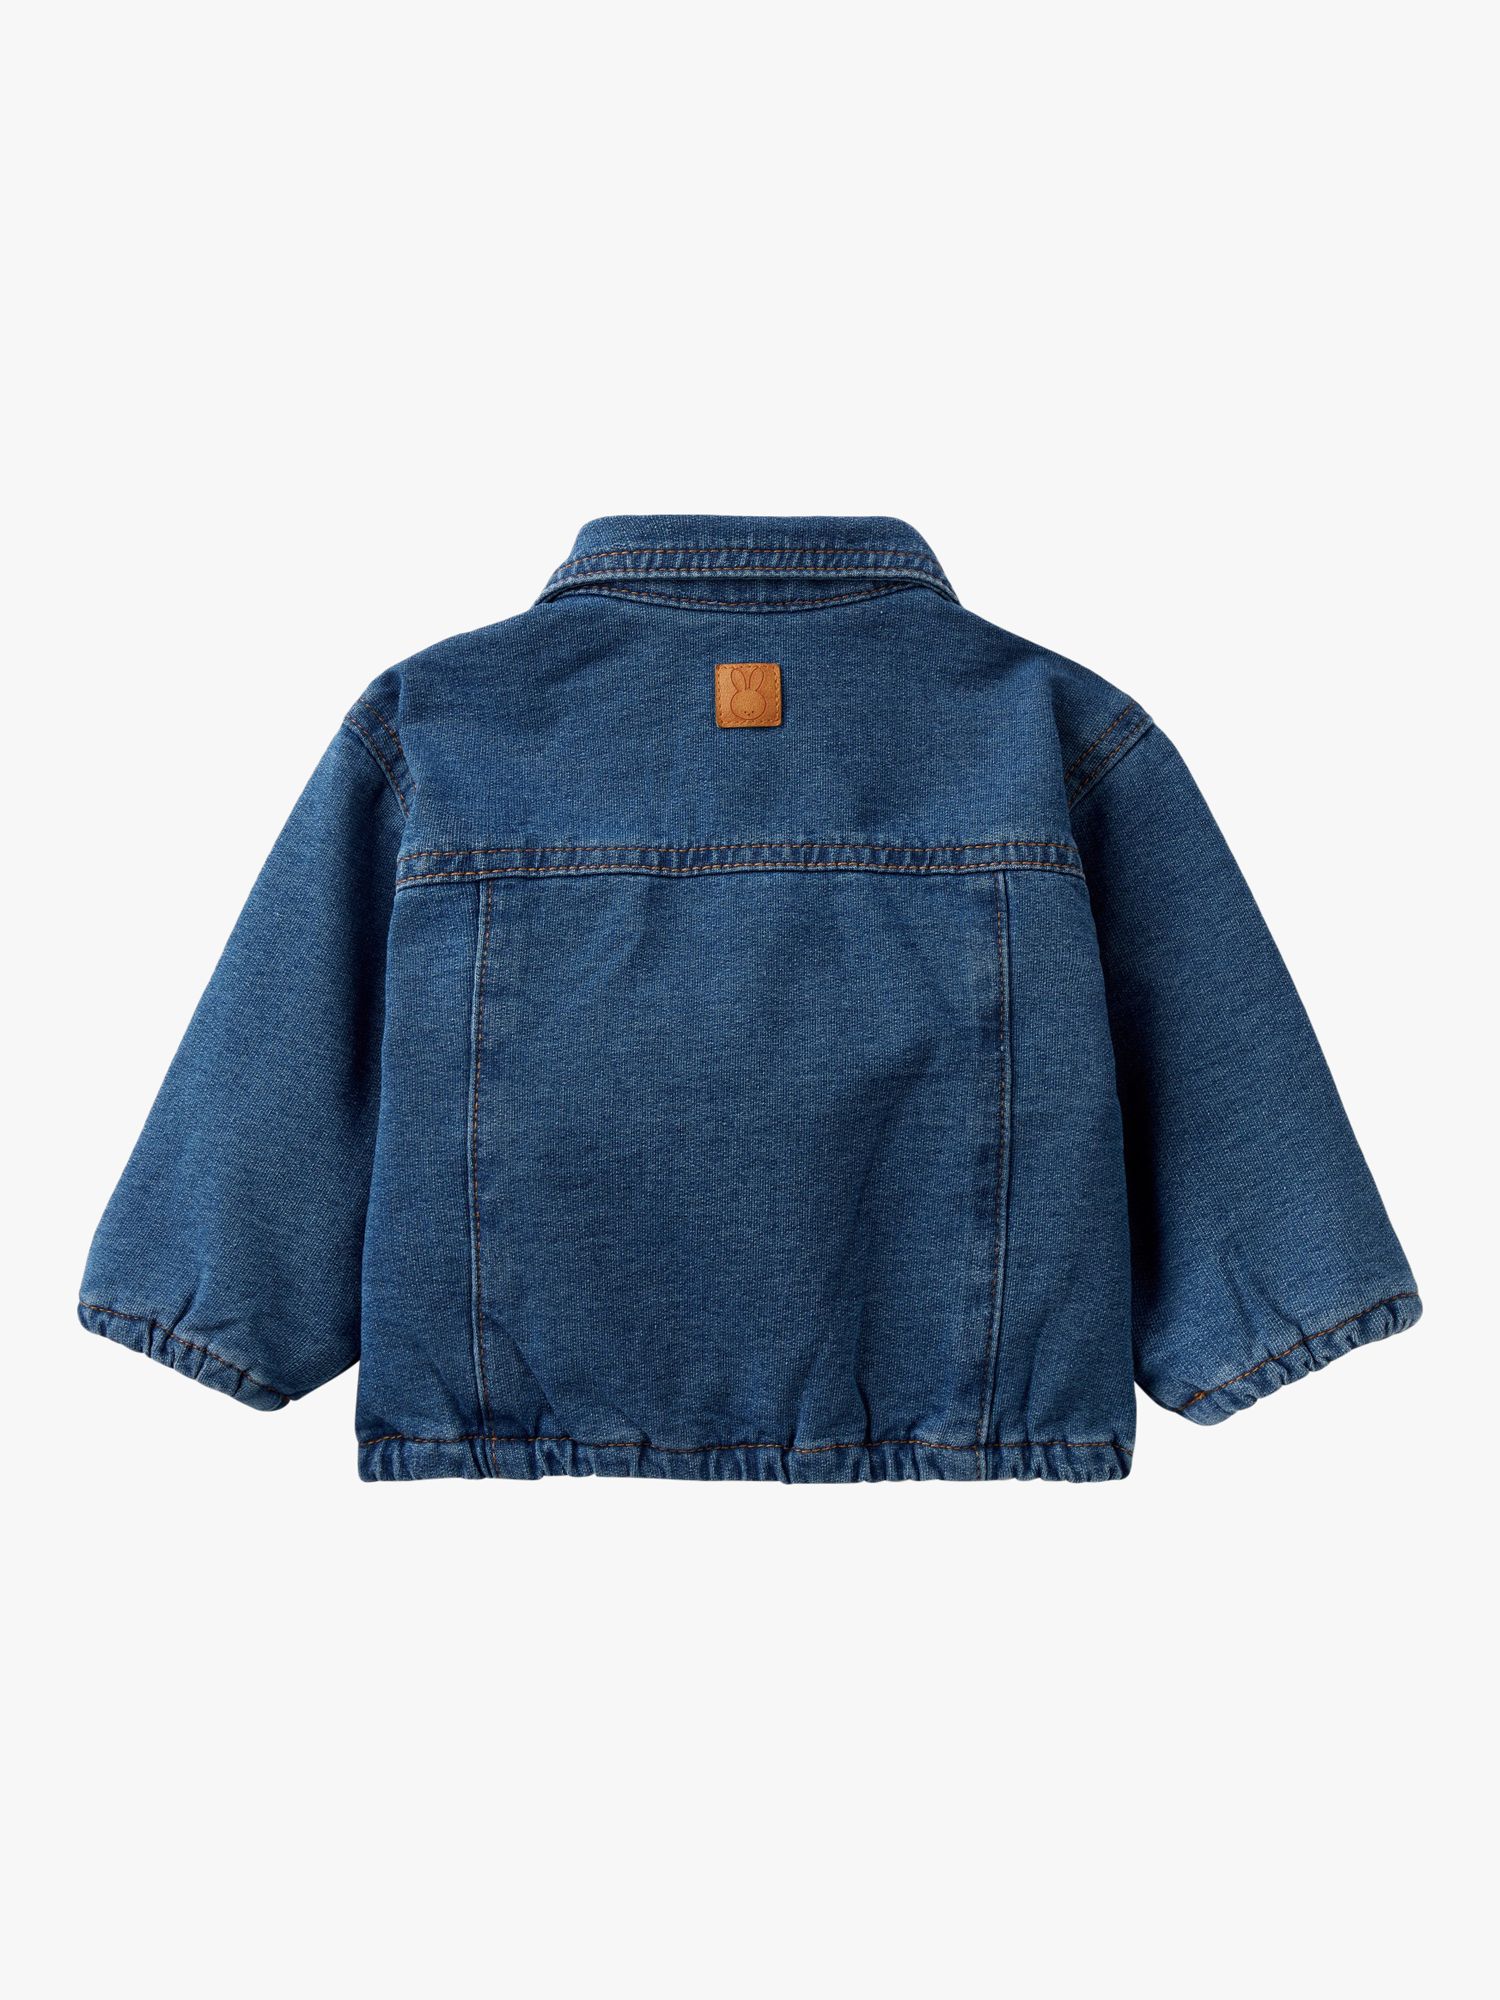 Benetton Baby Denim Jacket, Blue, 0-3 months